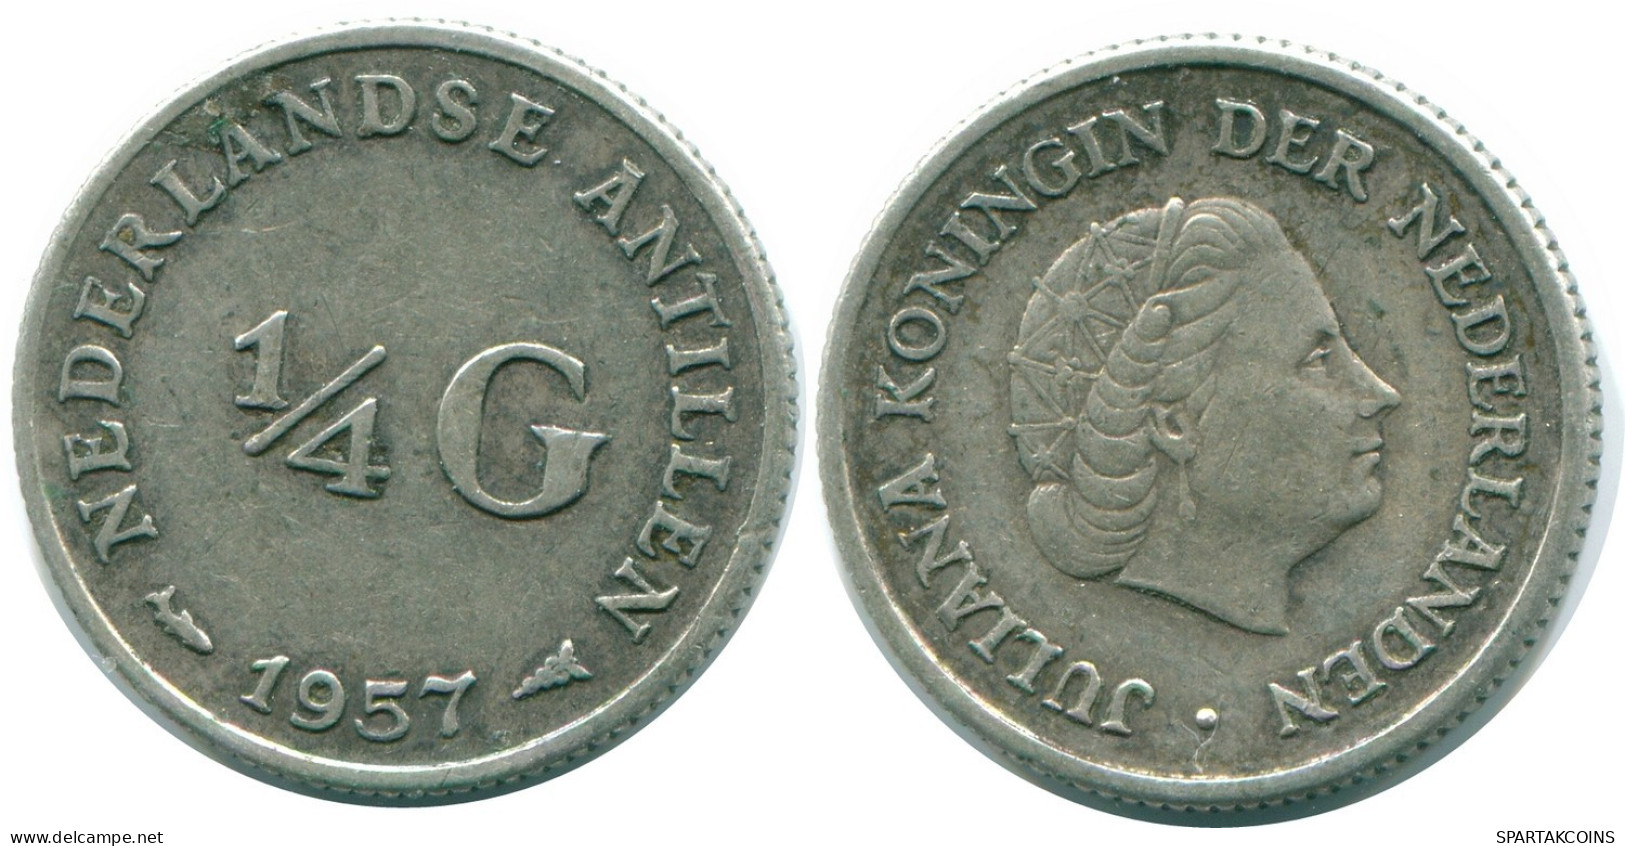 1/4 GULDEN 1957 NIEDERLÄNDISCHE ANTILLEN SILBER Koloniale Münze #NL10990.4.D.A - Antille Olandesi